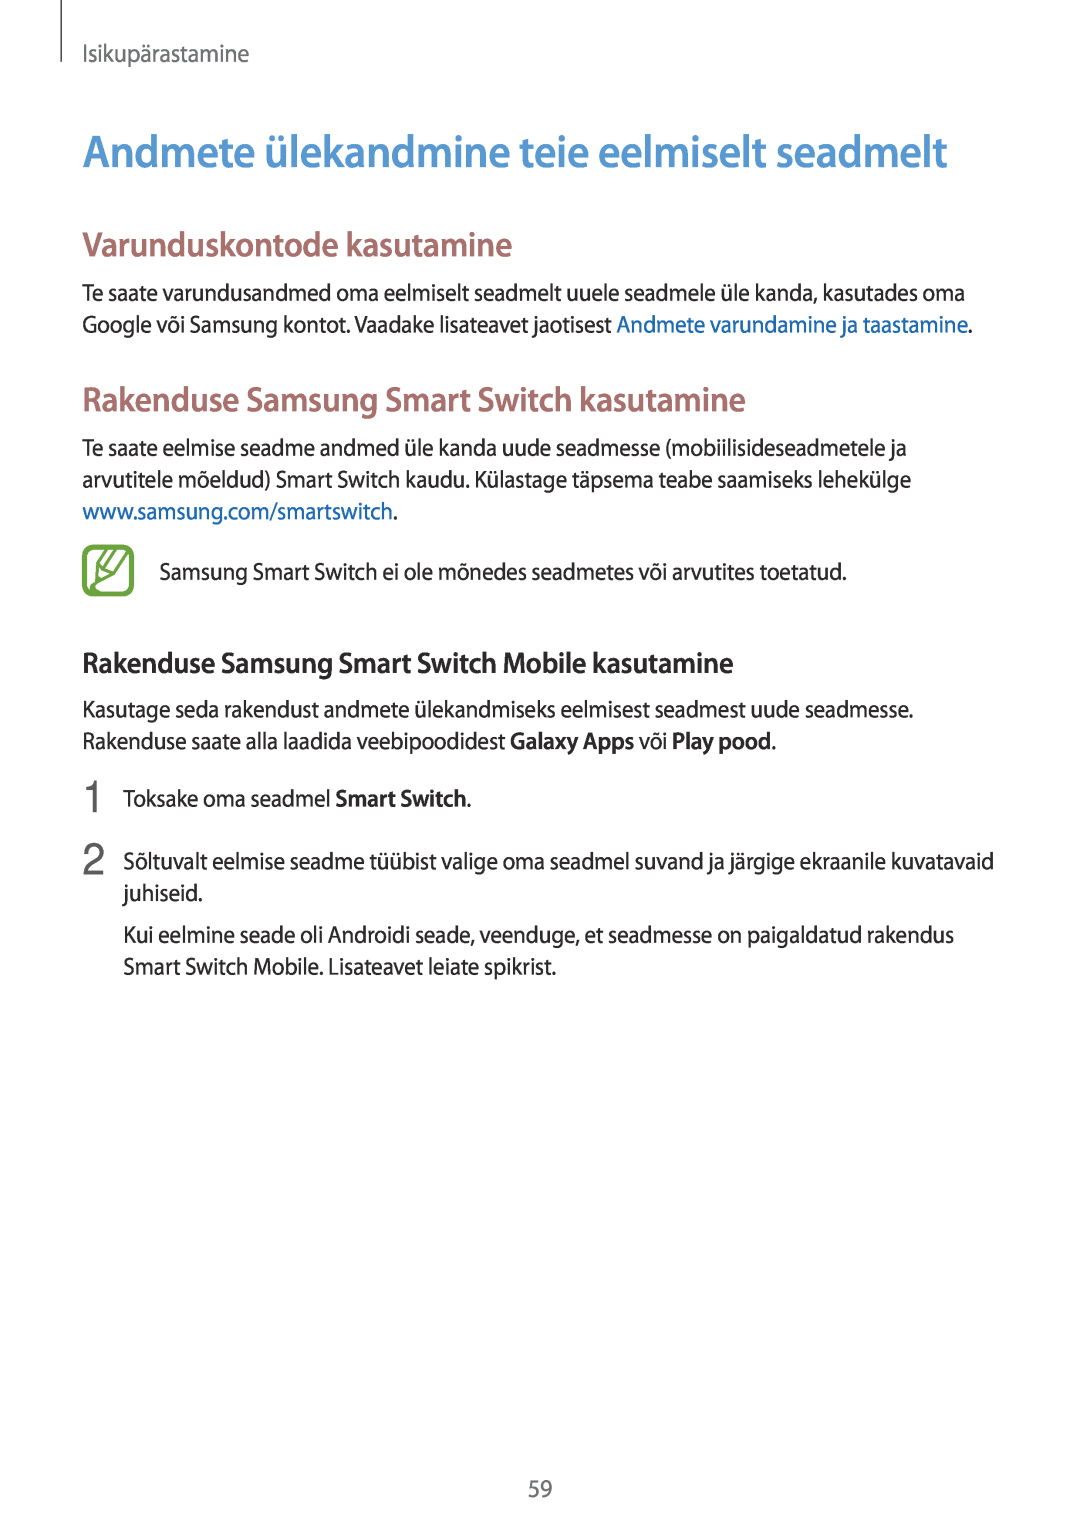 Samsung SM-T700NTSASEB manual Varunduskontode kasutamine, Rakenduse Samsung Smart Switch kasutamine, Isikupärastamine 